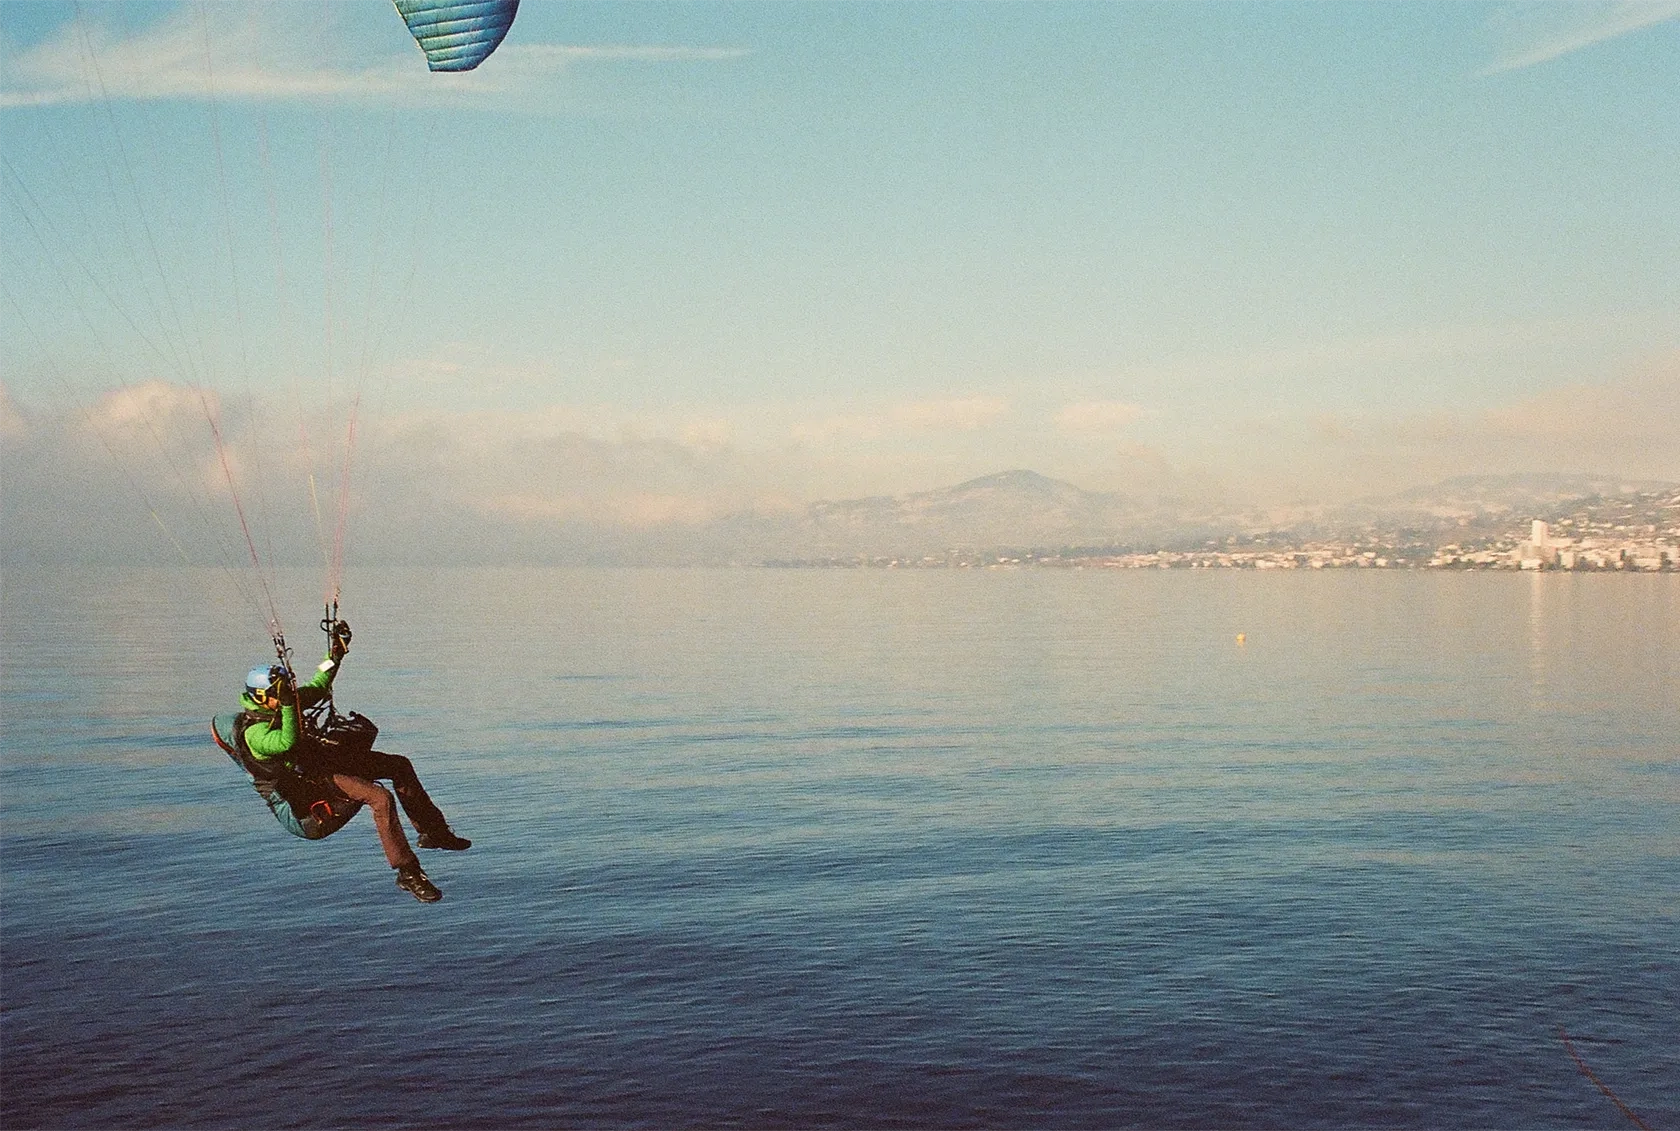 Image représentant un parapentiste volant très proche de l'eau au dessus d'un lac.